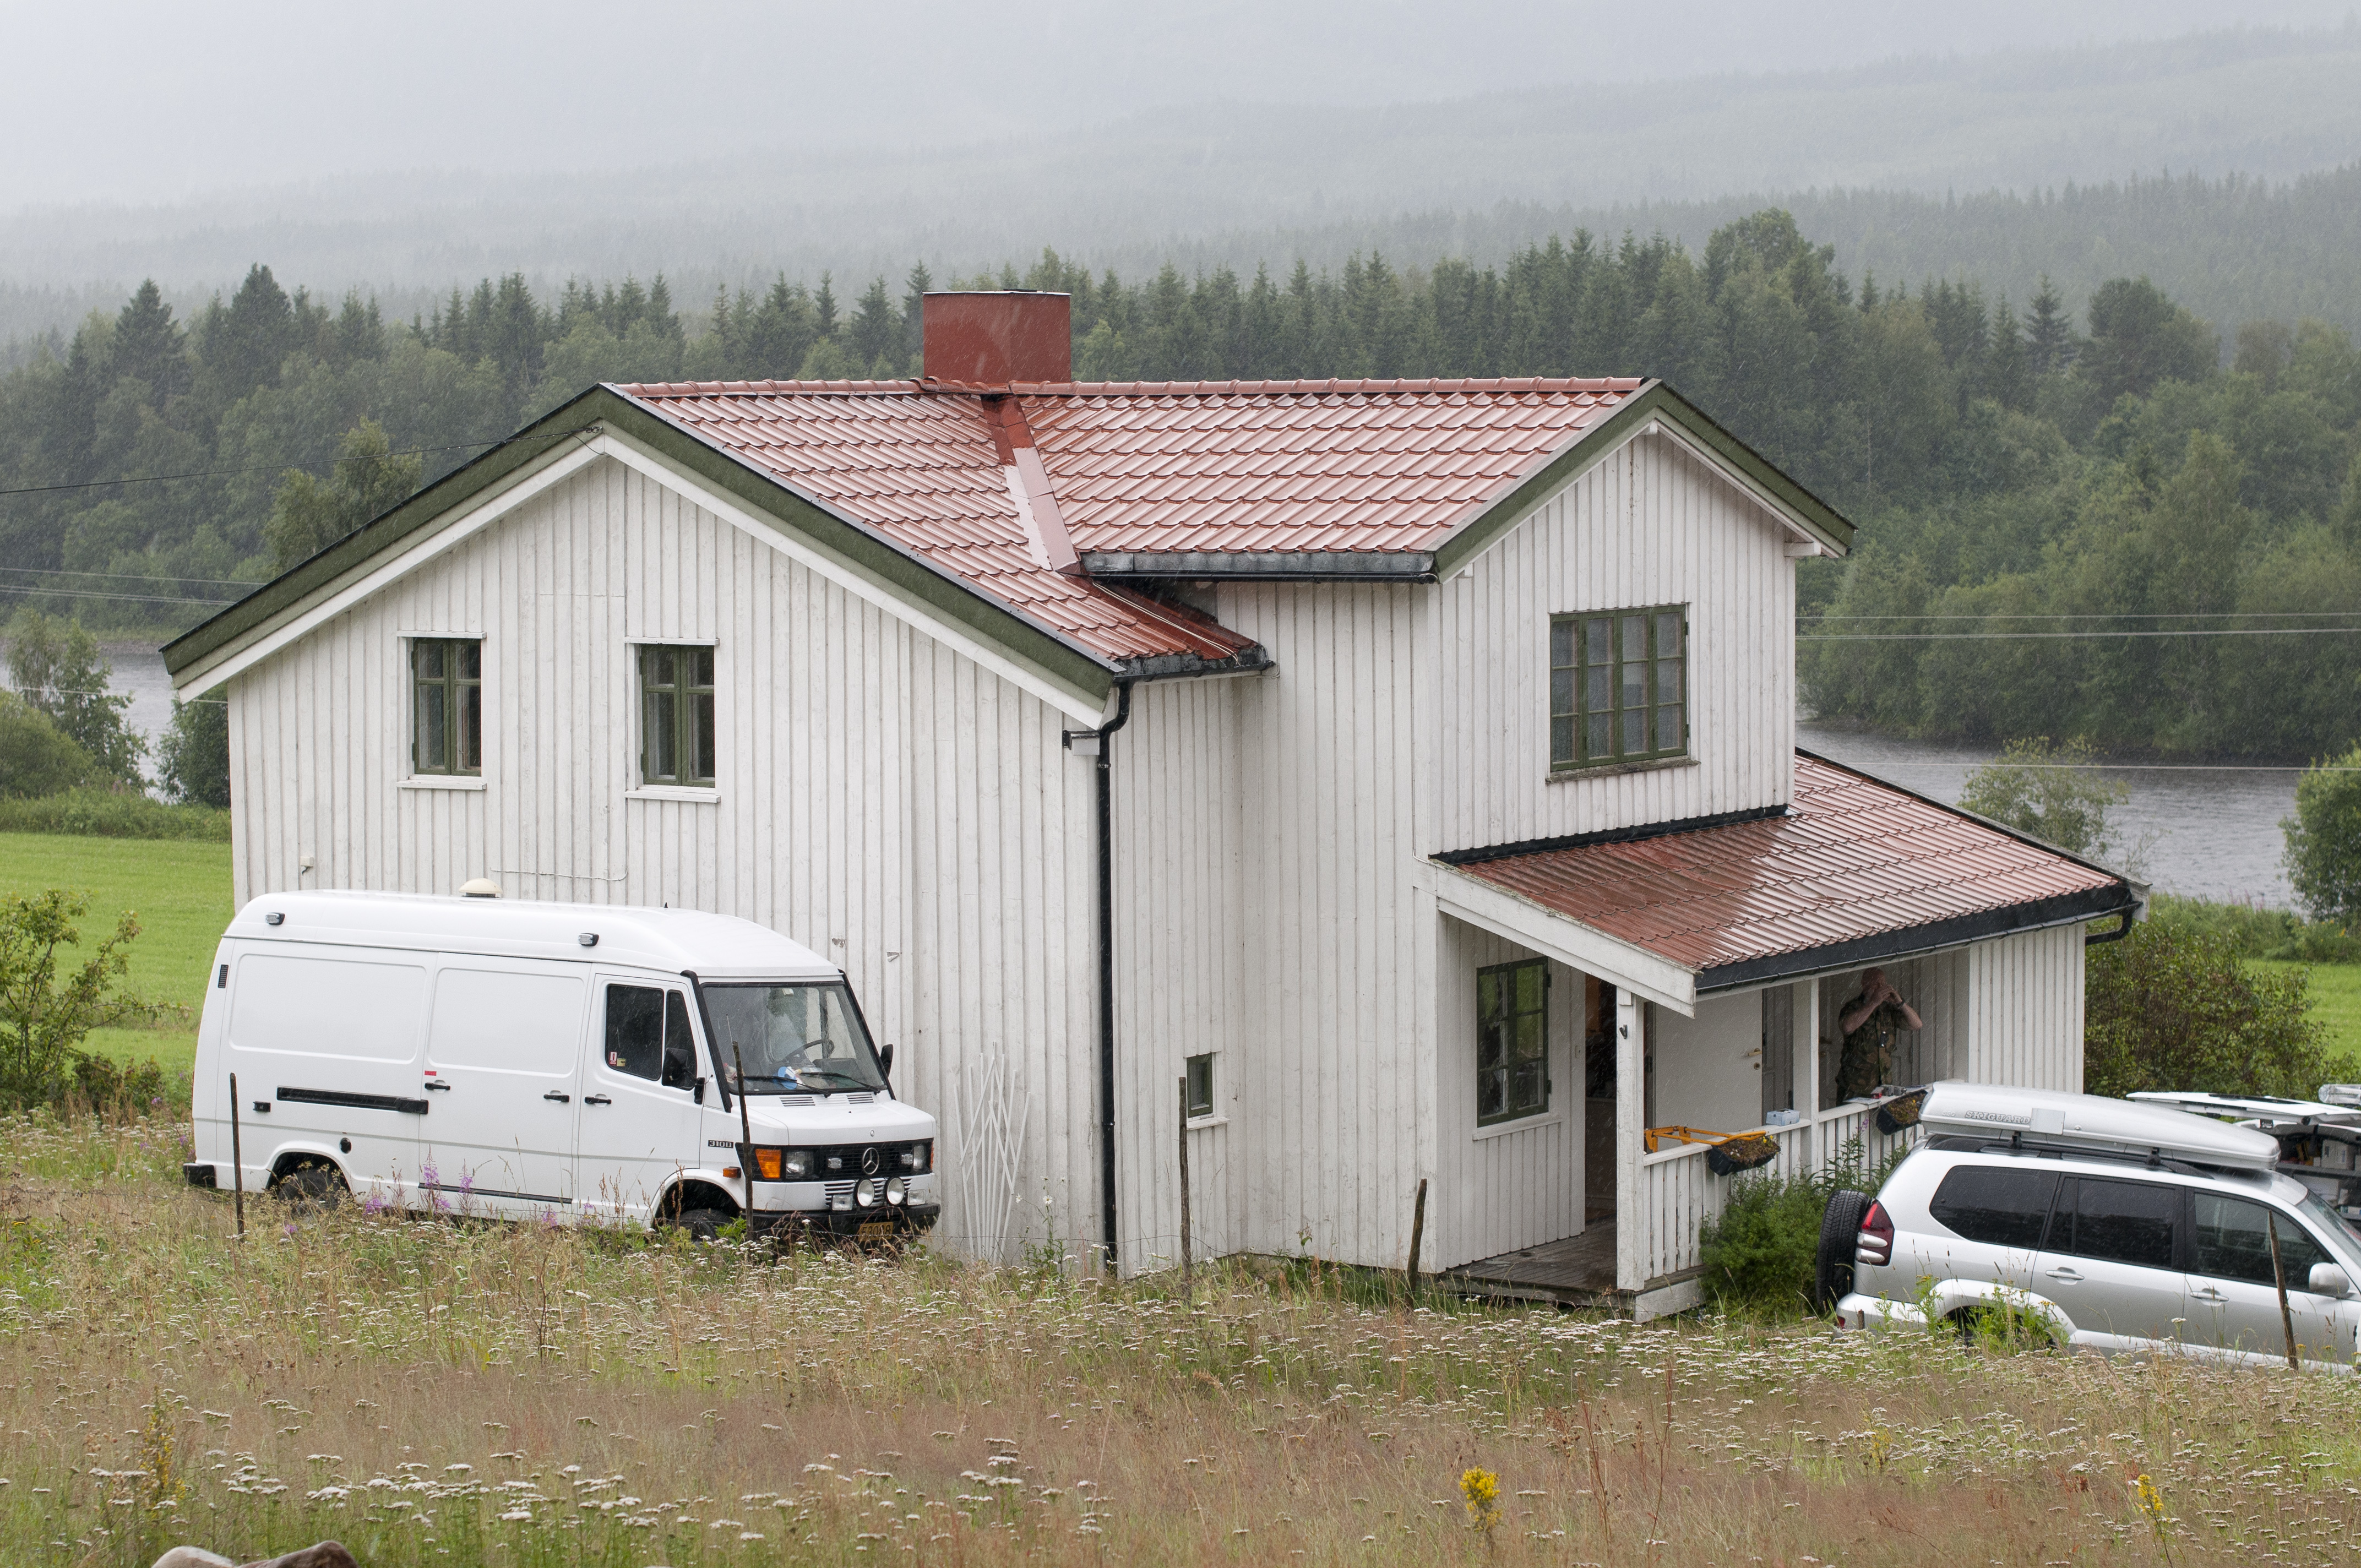 Det här är gården där Anders Behring Breivik bodde innan terrordåden.